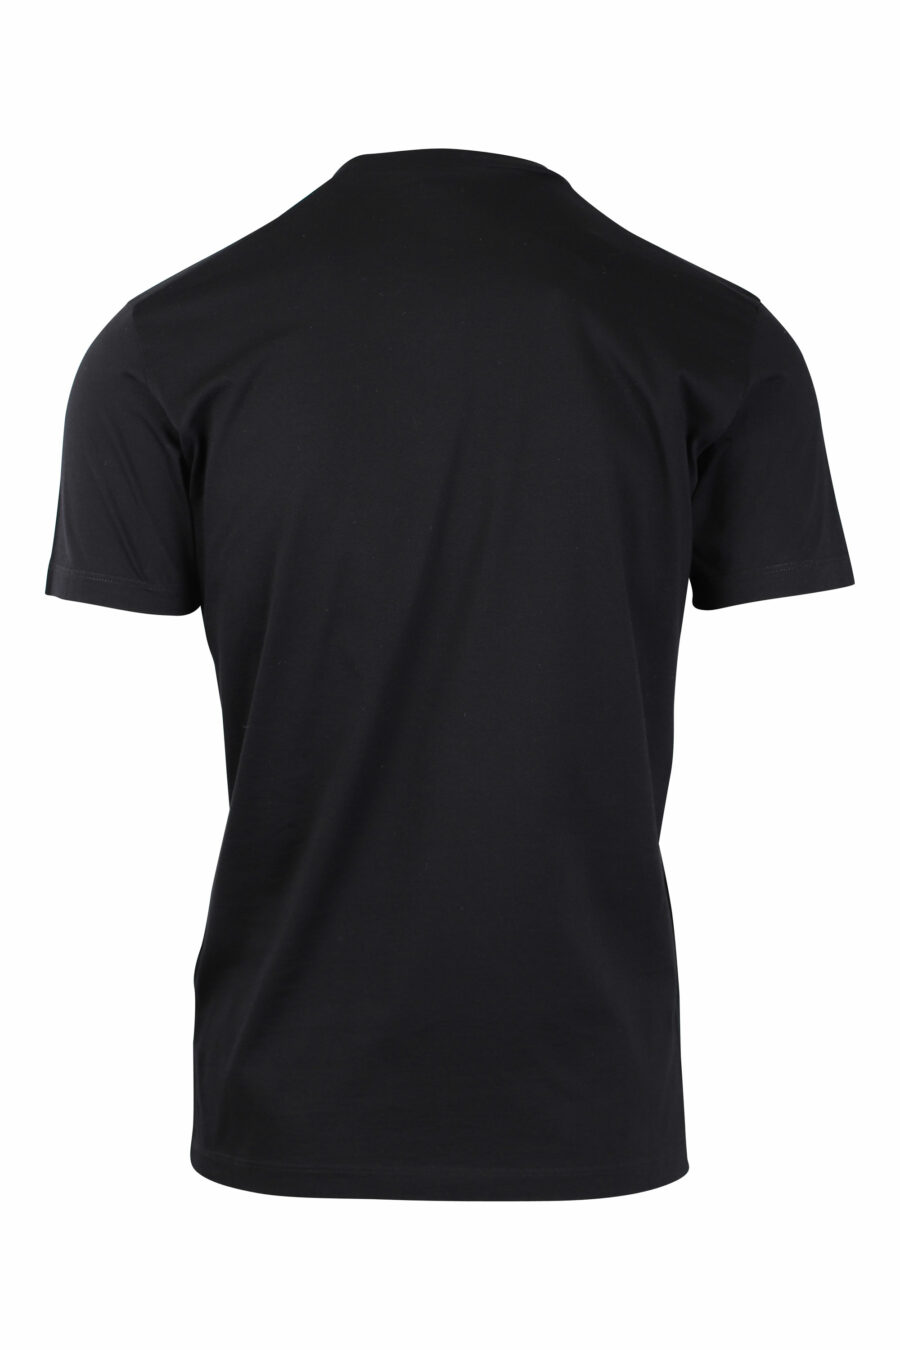 Camiseta negra con estampado bob marley - IMG 1480